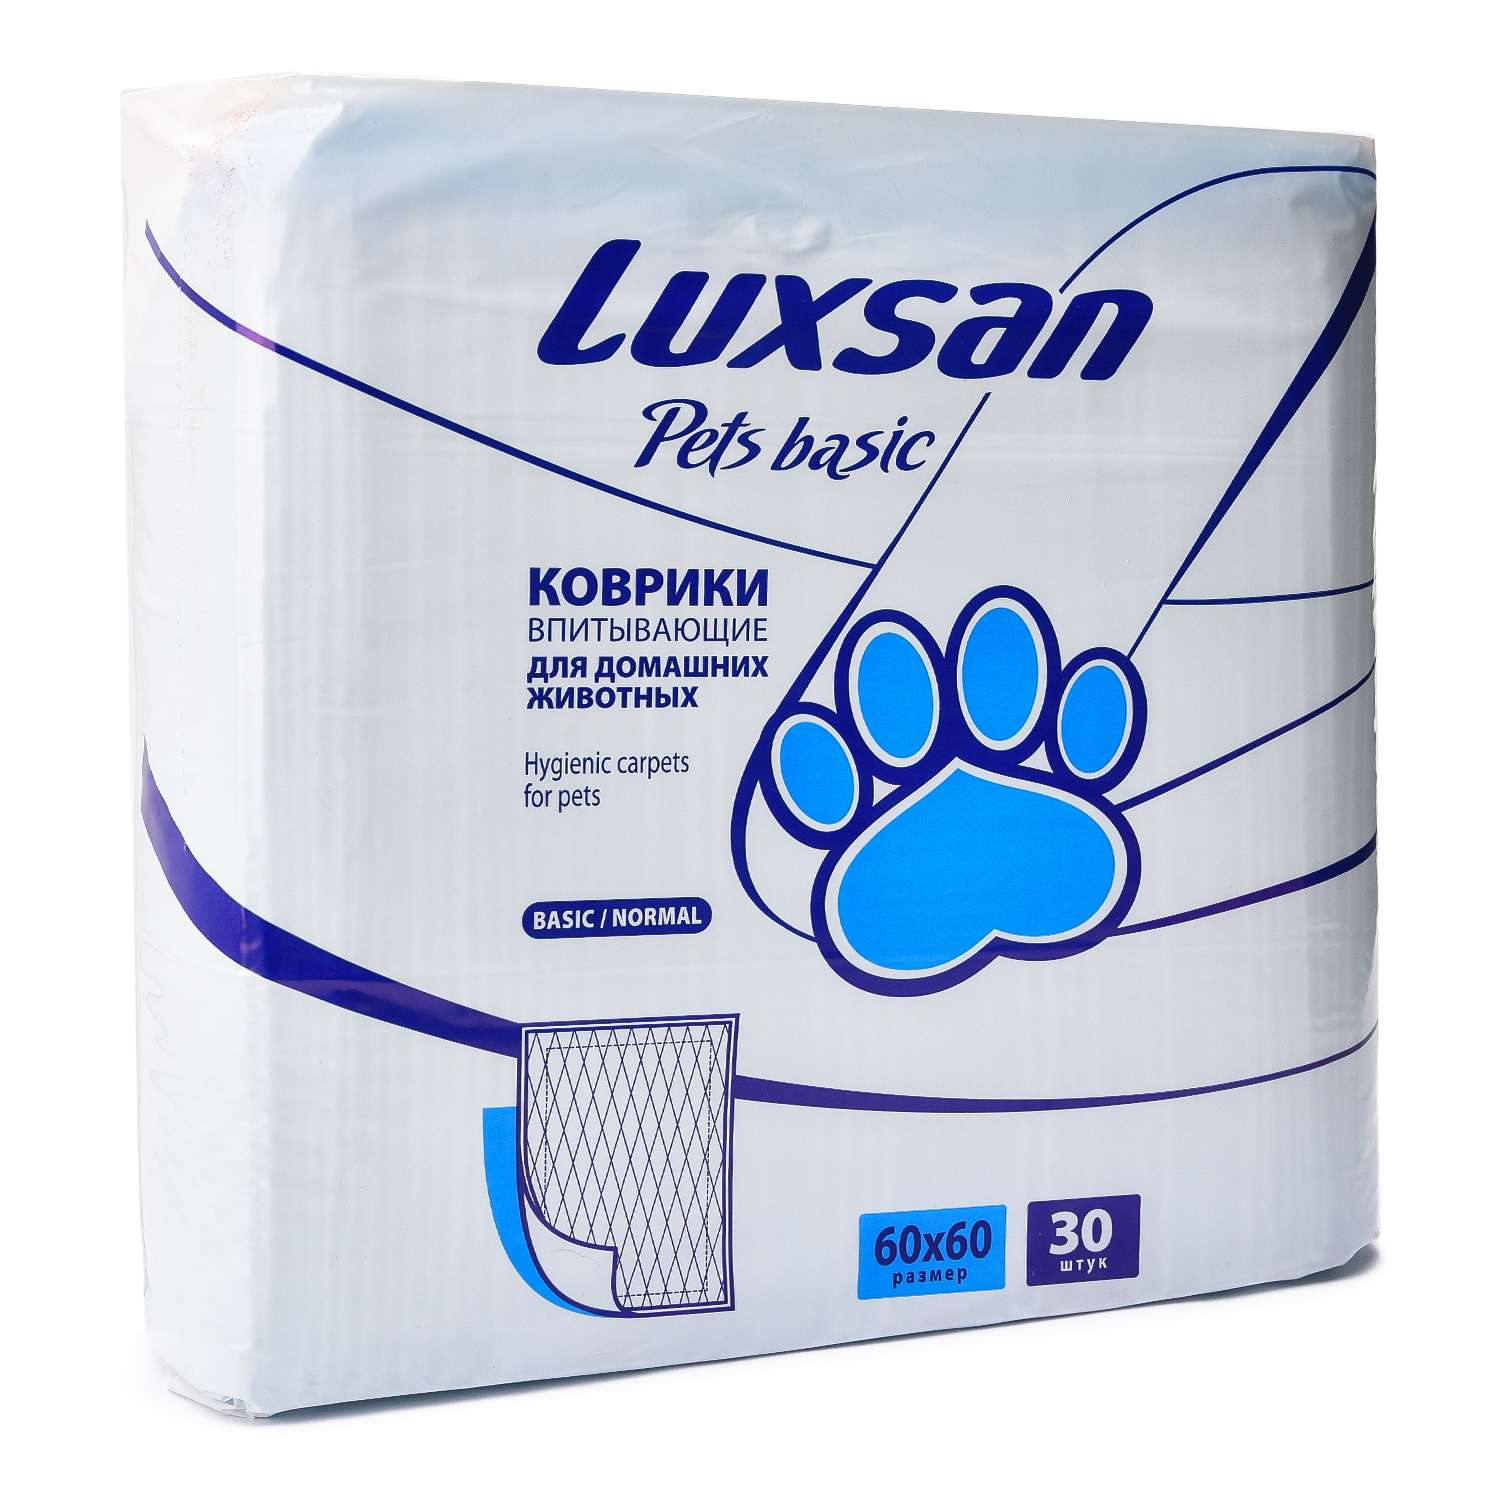 Коврики для животных Luxsan Pets впитывающие 60*60см 30шт - фото 1